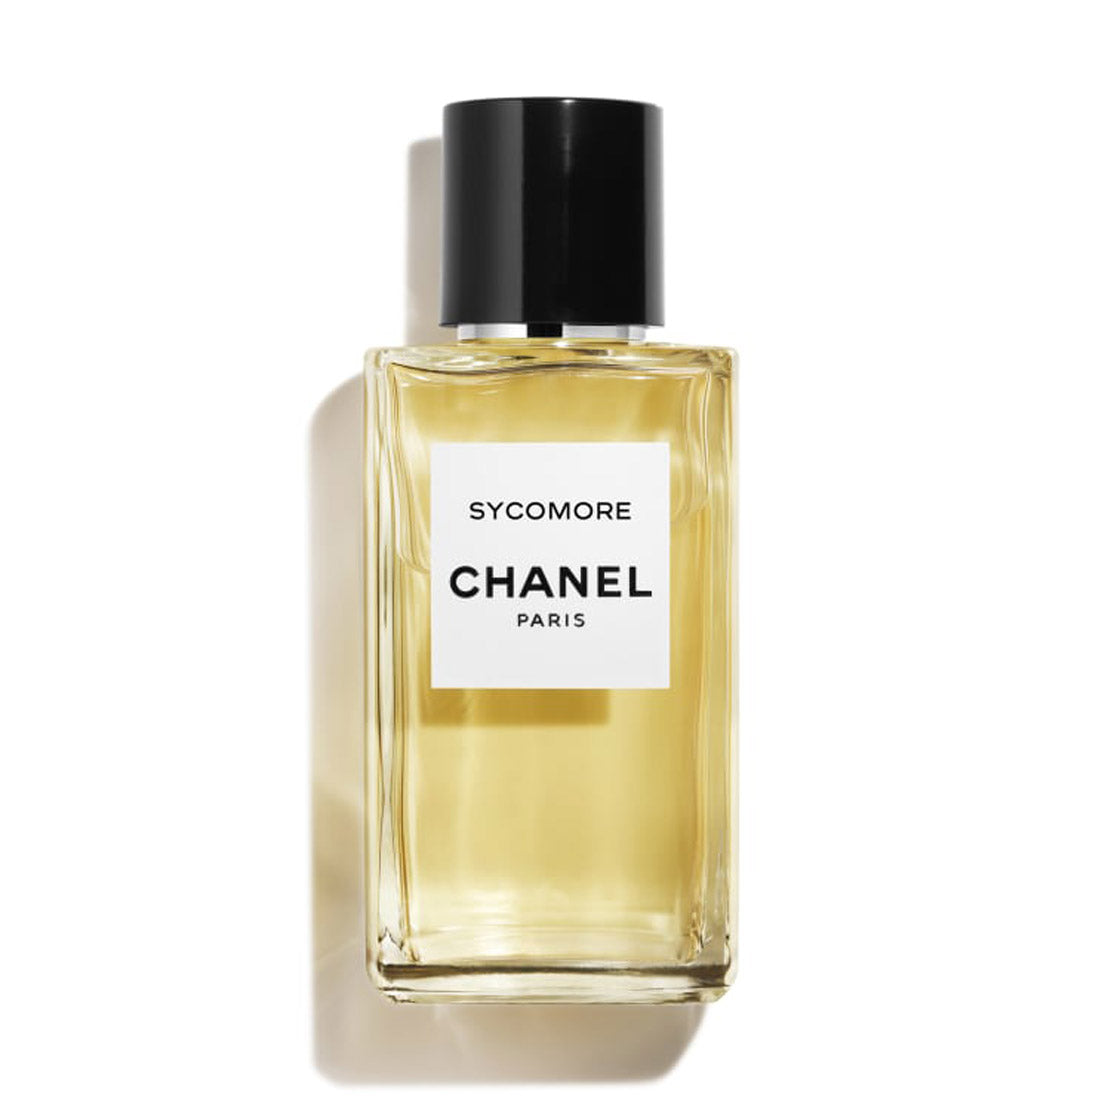 Chanel Paris Sycomore Les Exclusifs De Chanel Eau de Parfum